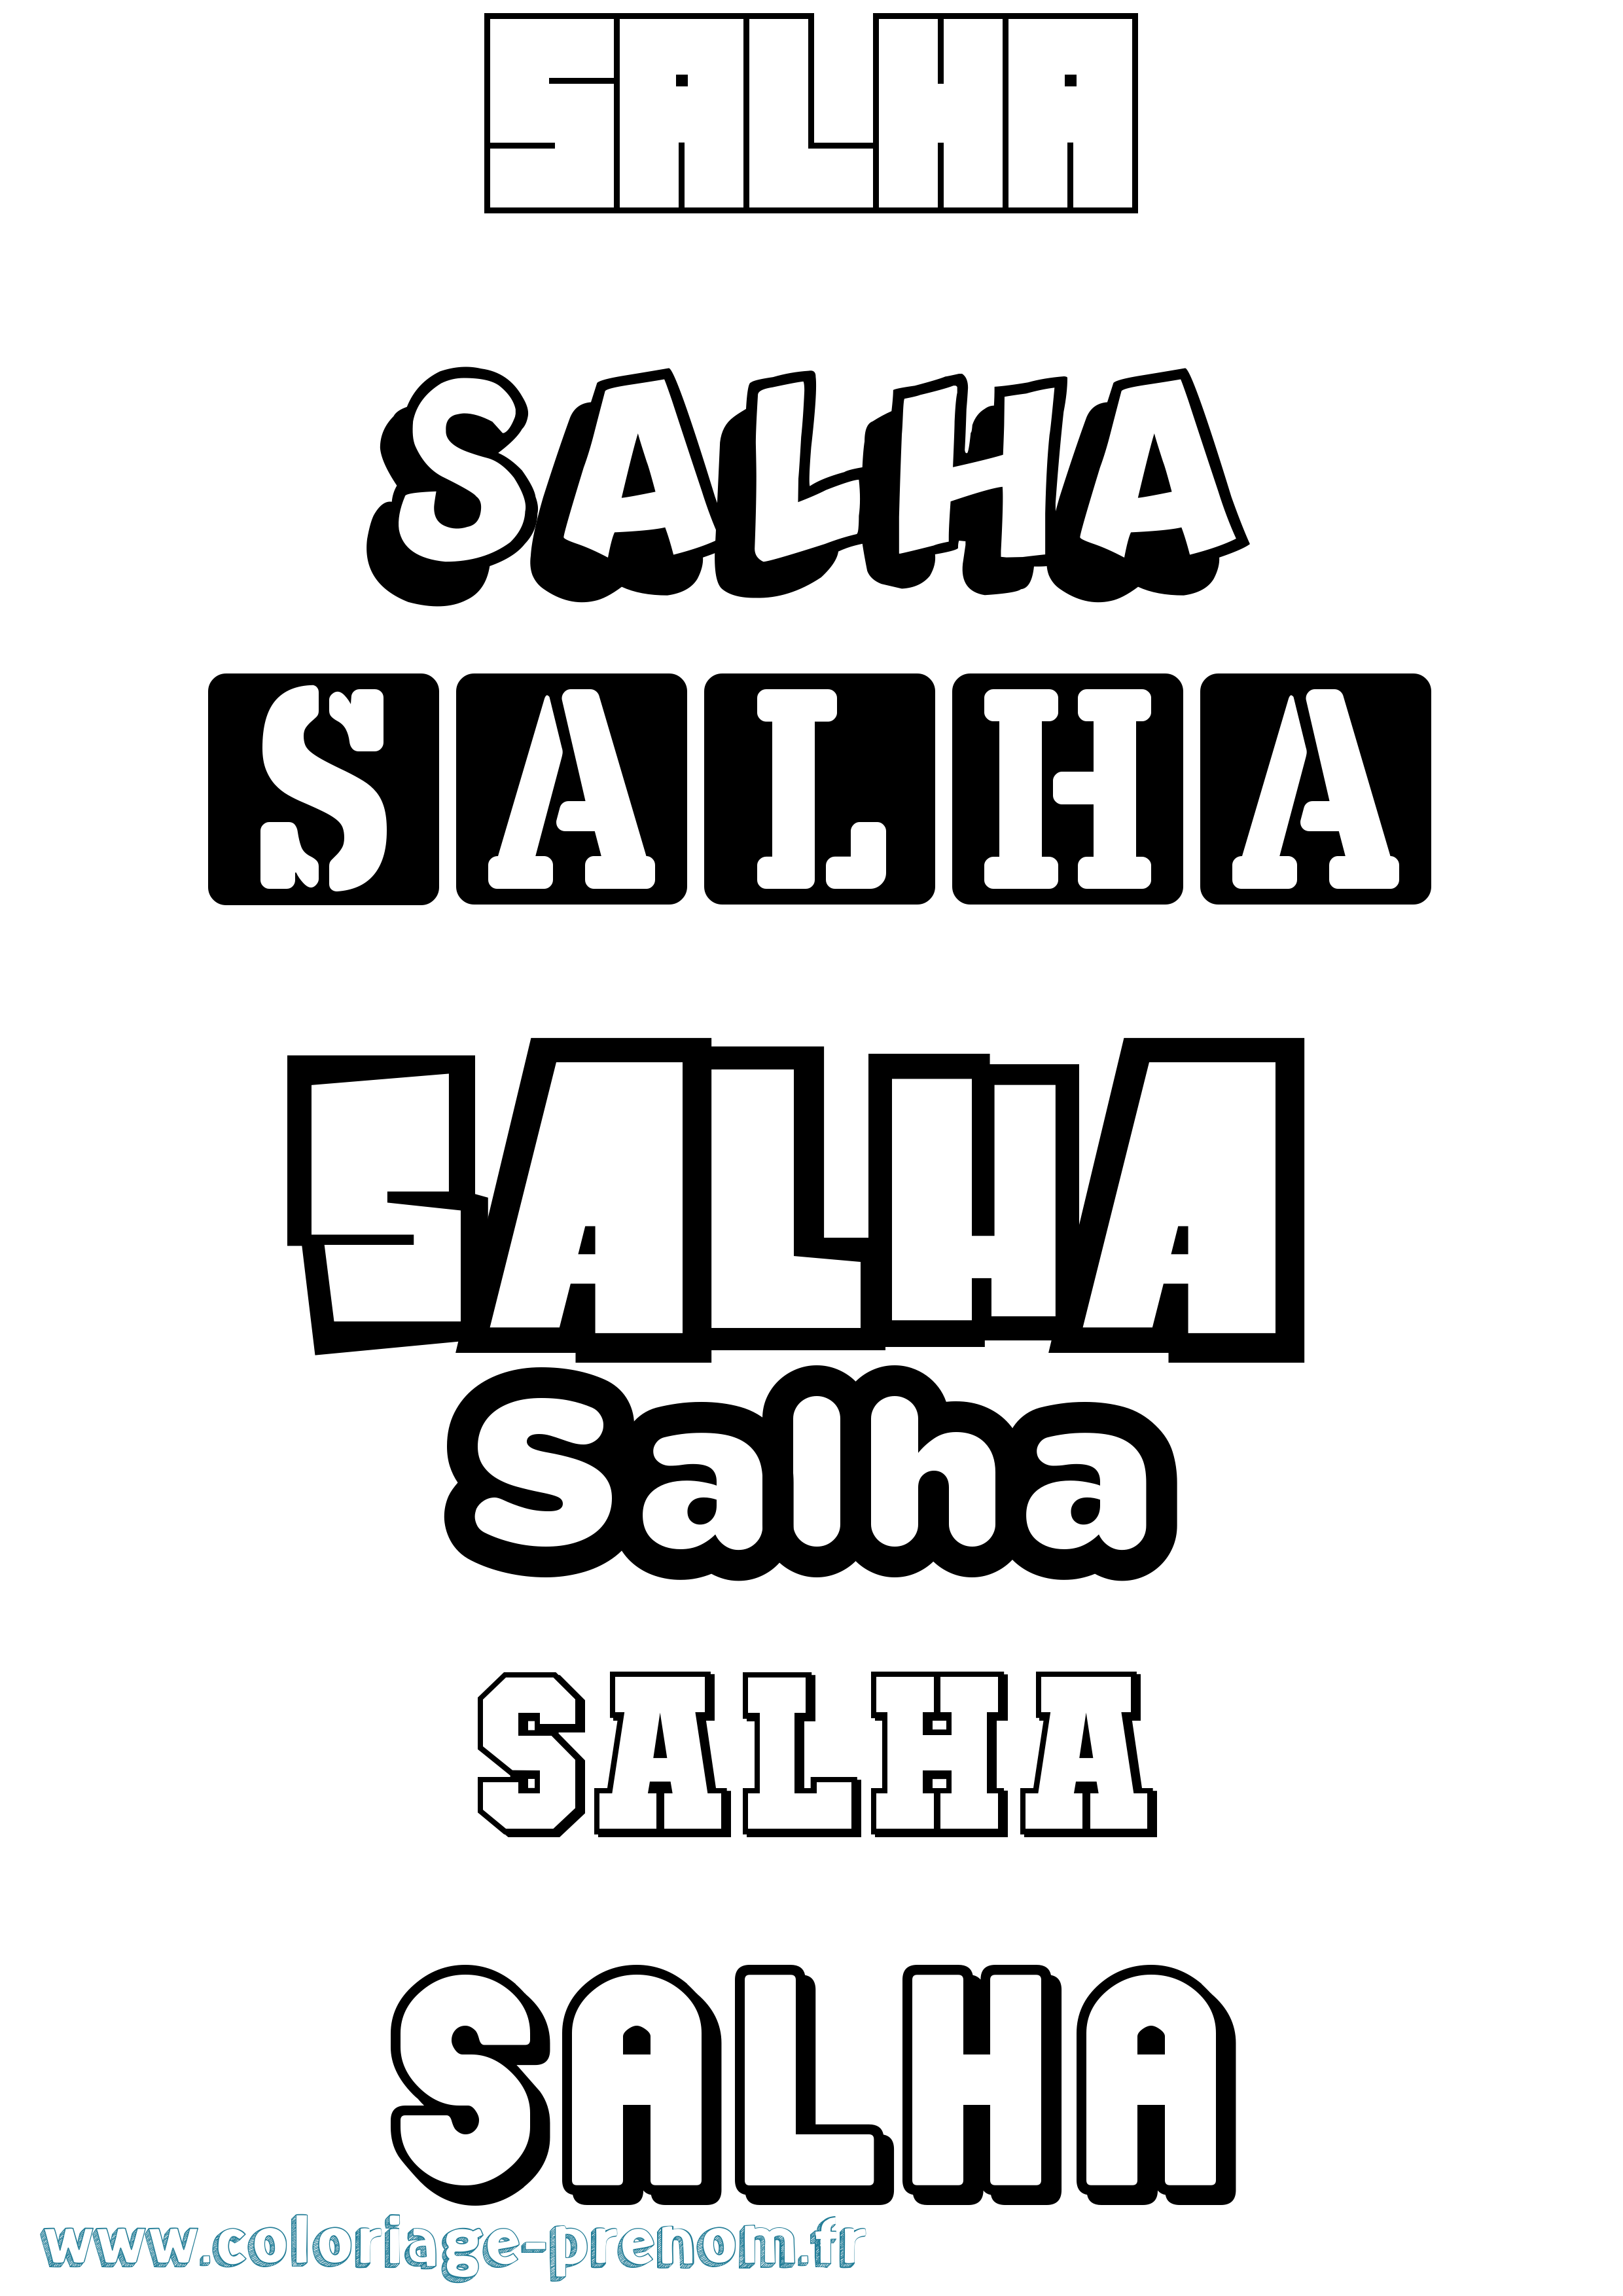 Coloriage prénom Salha Simple